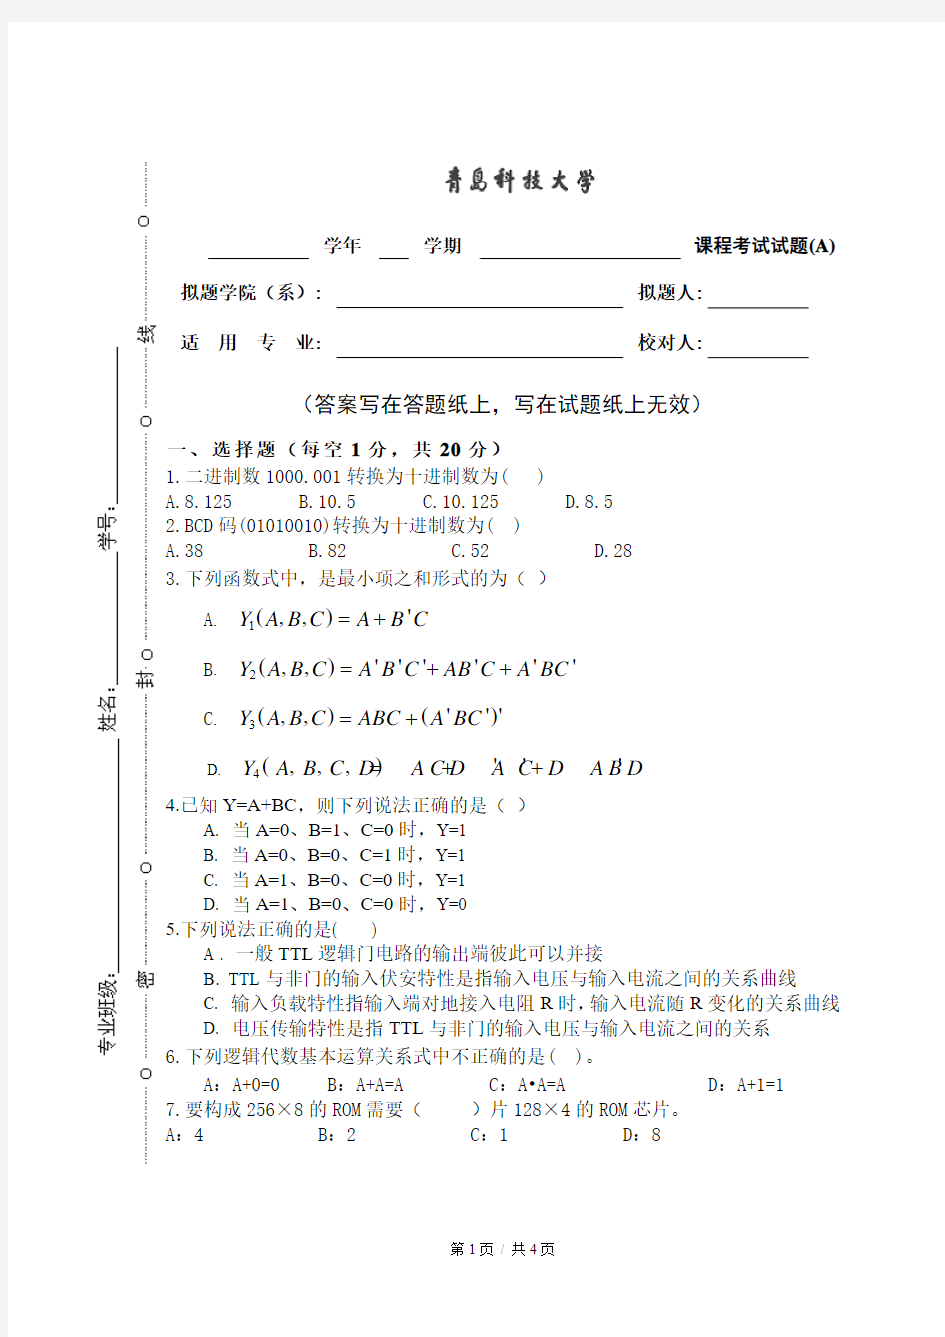 青岛科技大学数电考试题